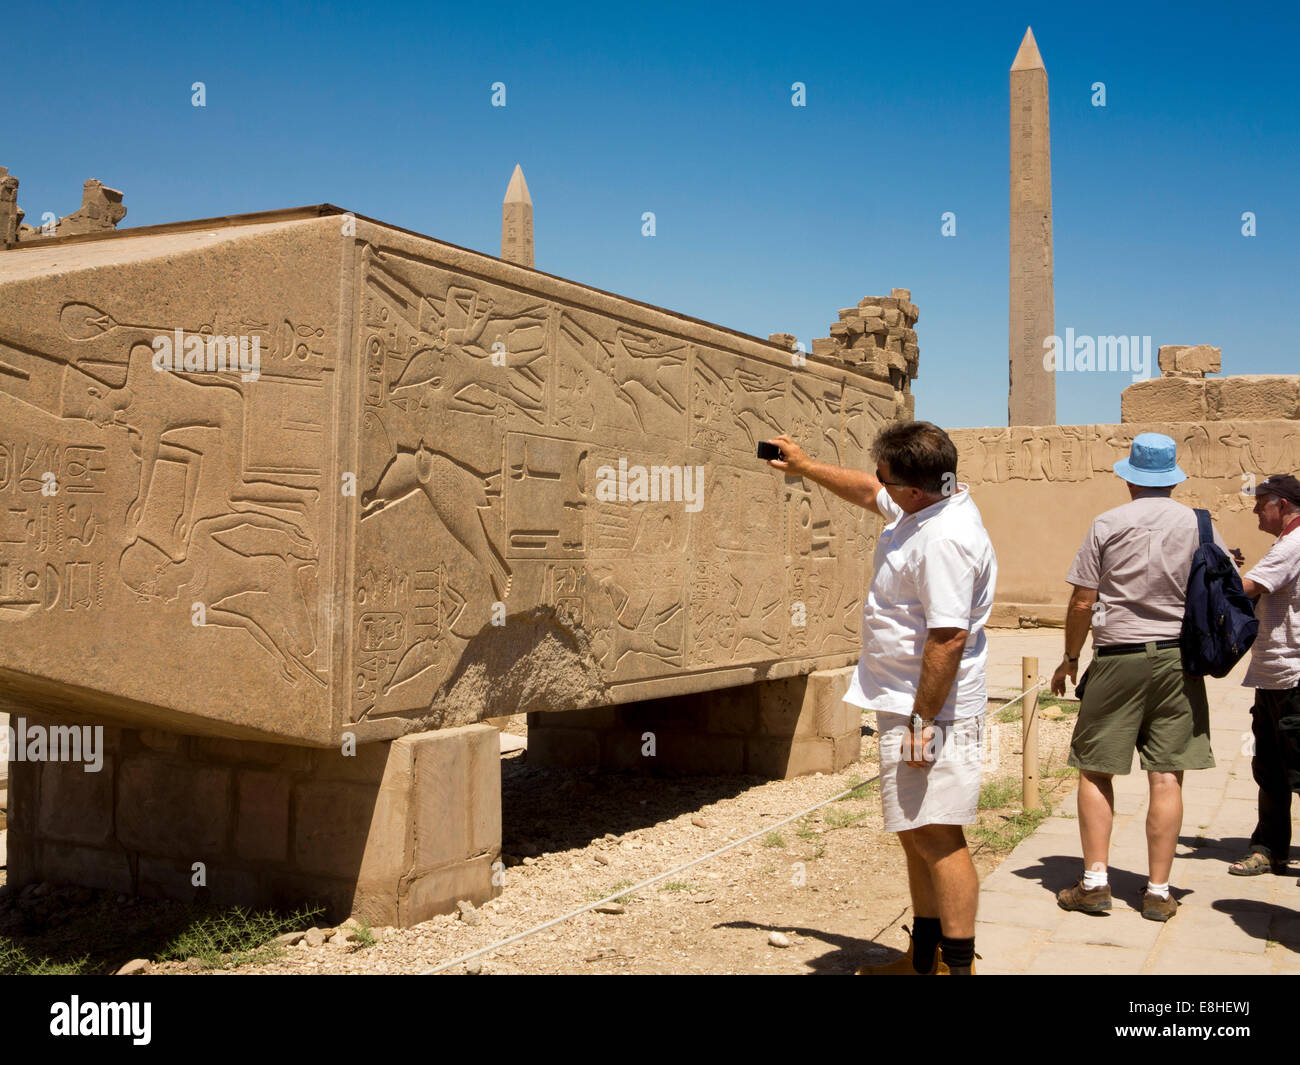 Egypt, Luxor, Karnak Temple, tourist taking picture of Hapshetsut granite obelisk lying horizontal Stock Photo